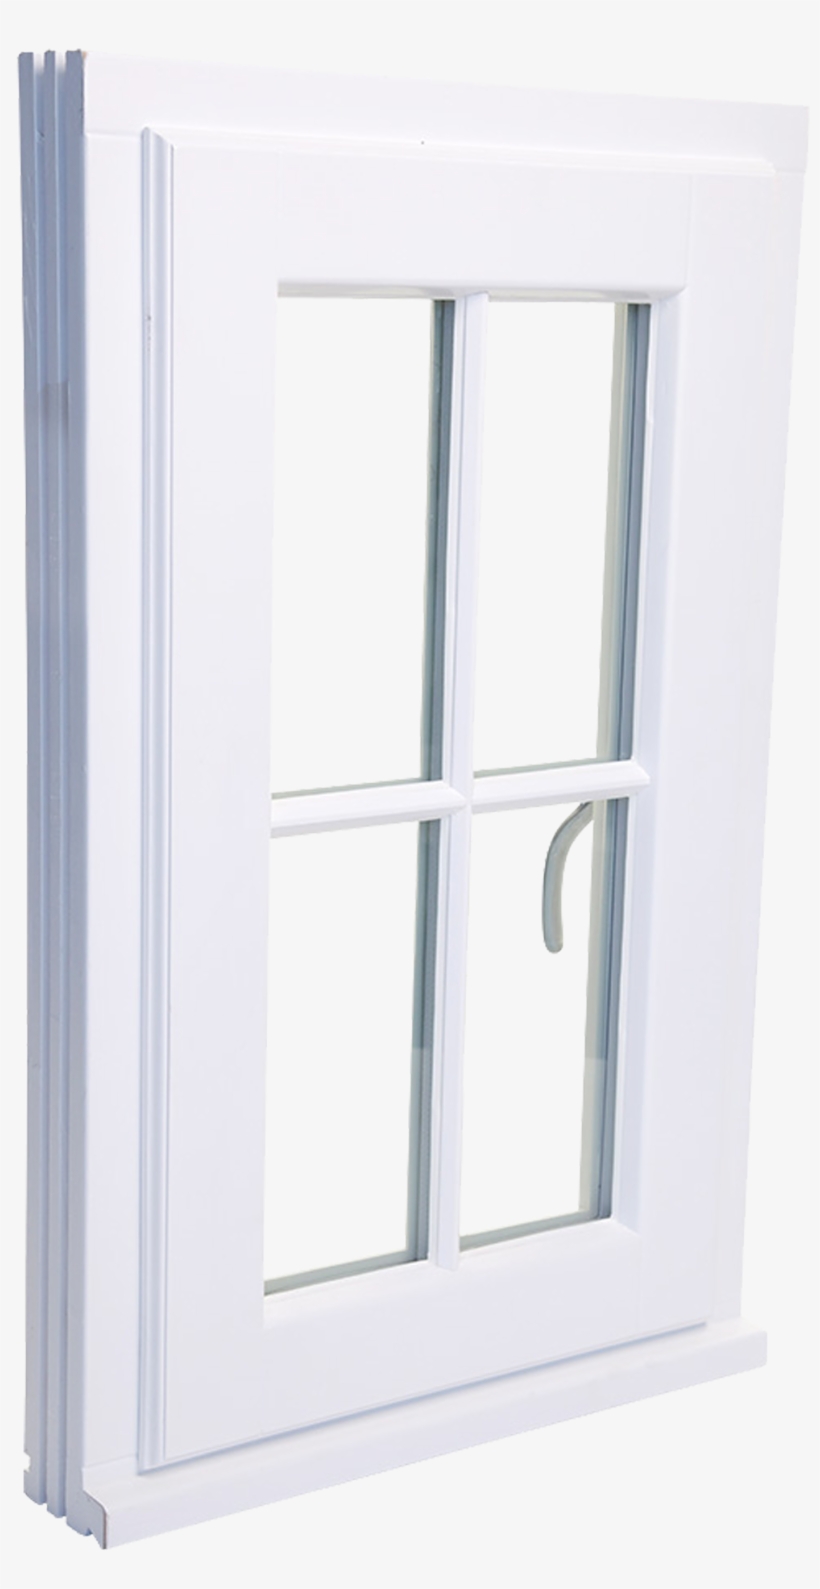 Stormproof Window - Olsen Doors And Windows, transparent png #6186143